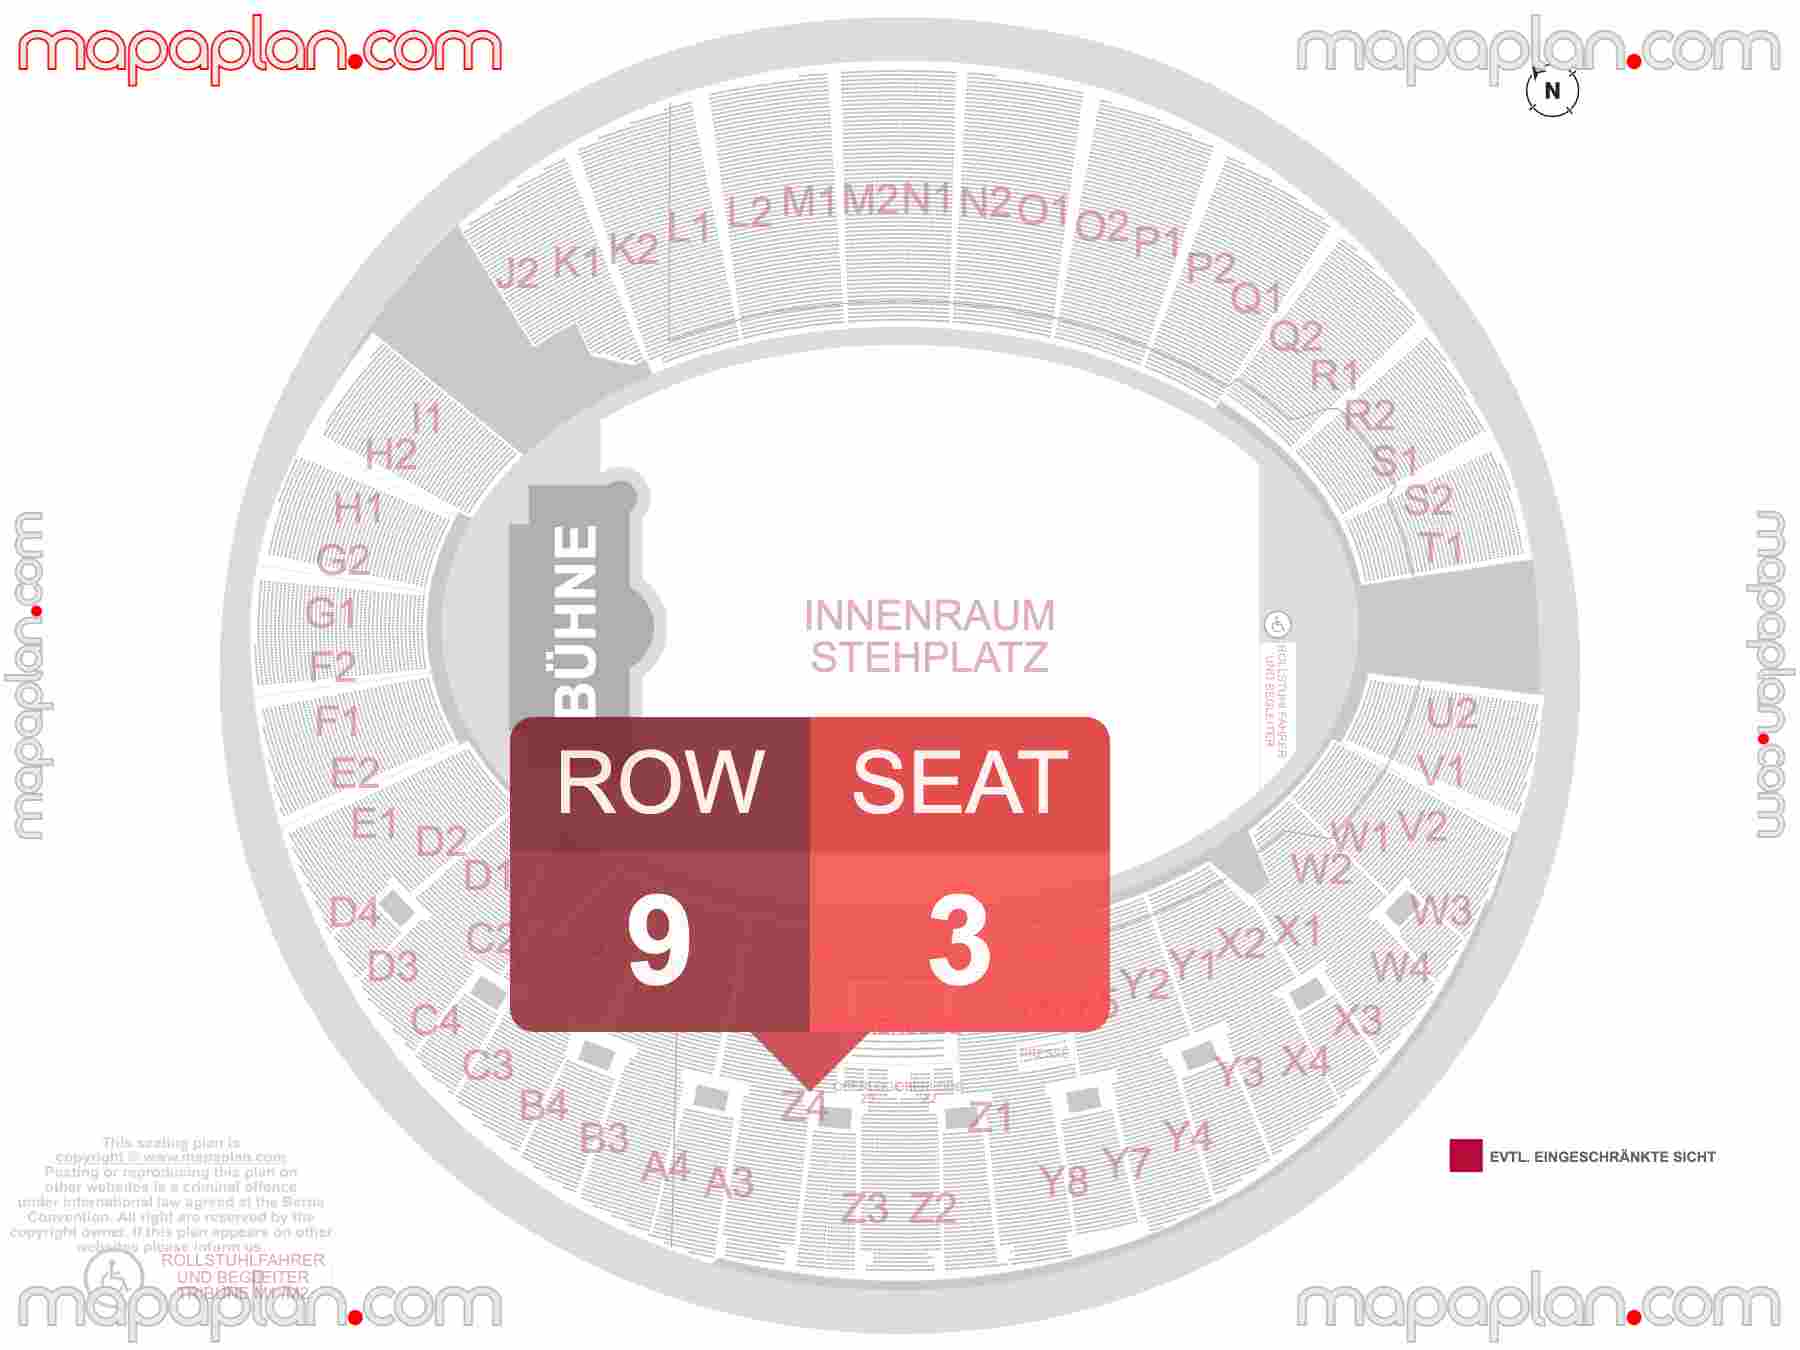 Munich Olympiastadion seating plan Concert & Football Konzerte und Fußball Sitzplan mit Sitzplatz & Reihennummerierung detailed seat numbers and row numbering plan with interactive map map layout